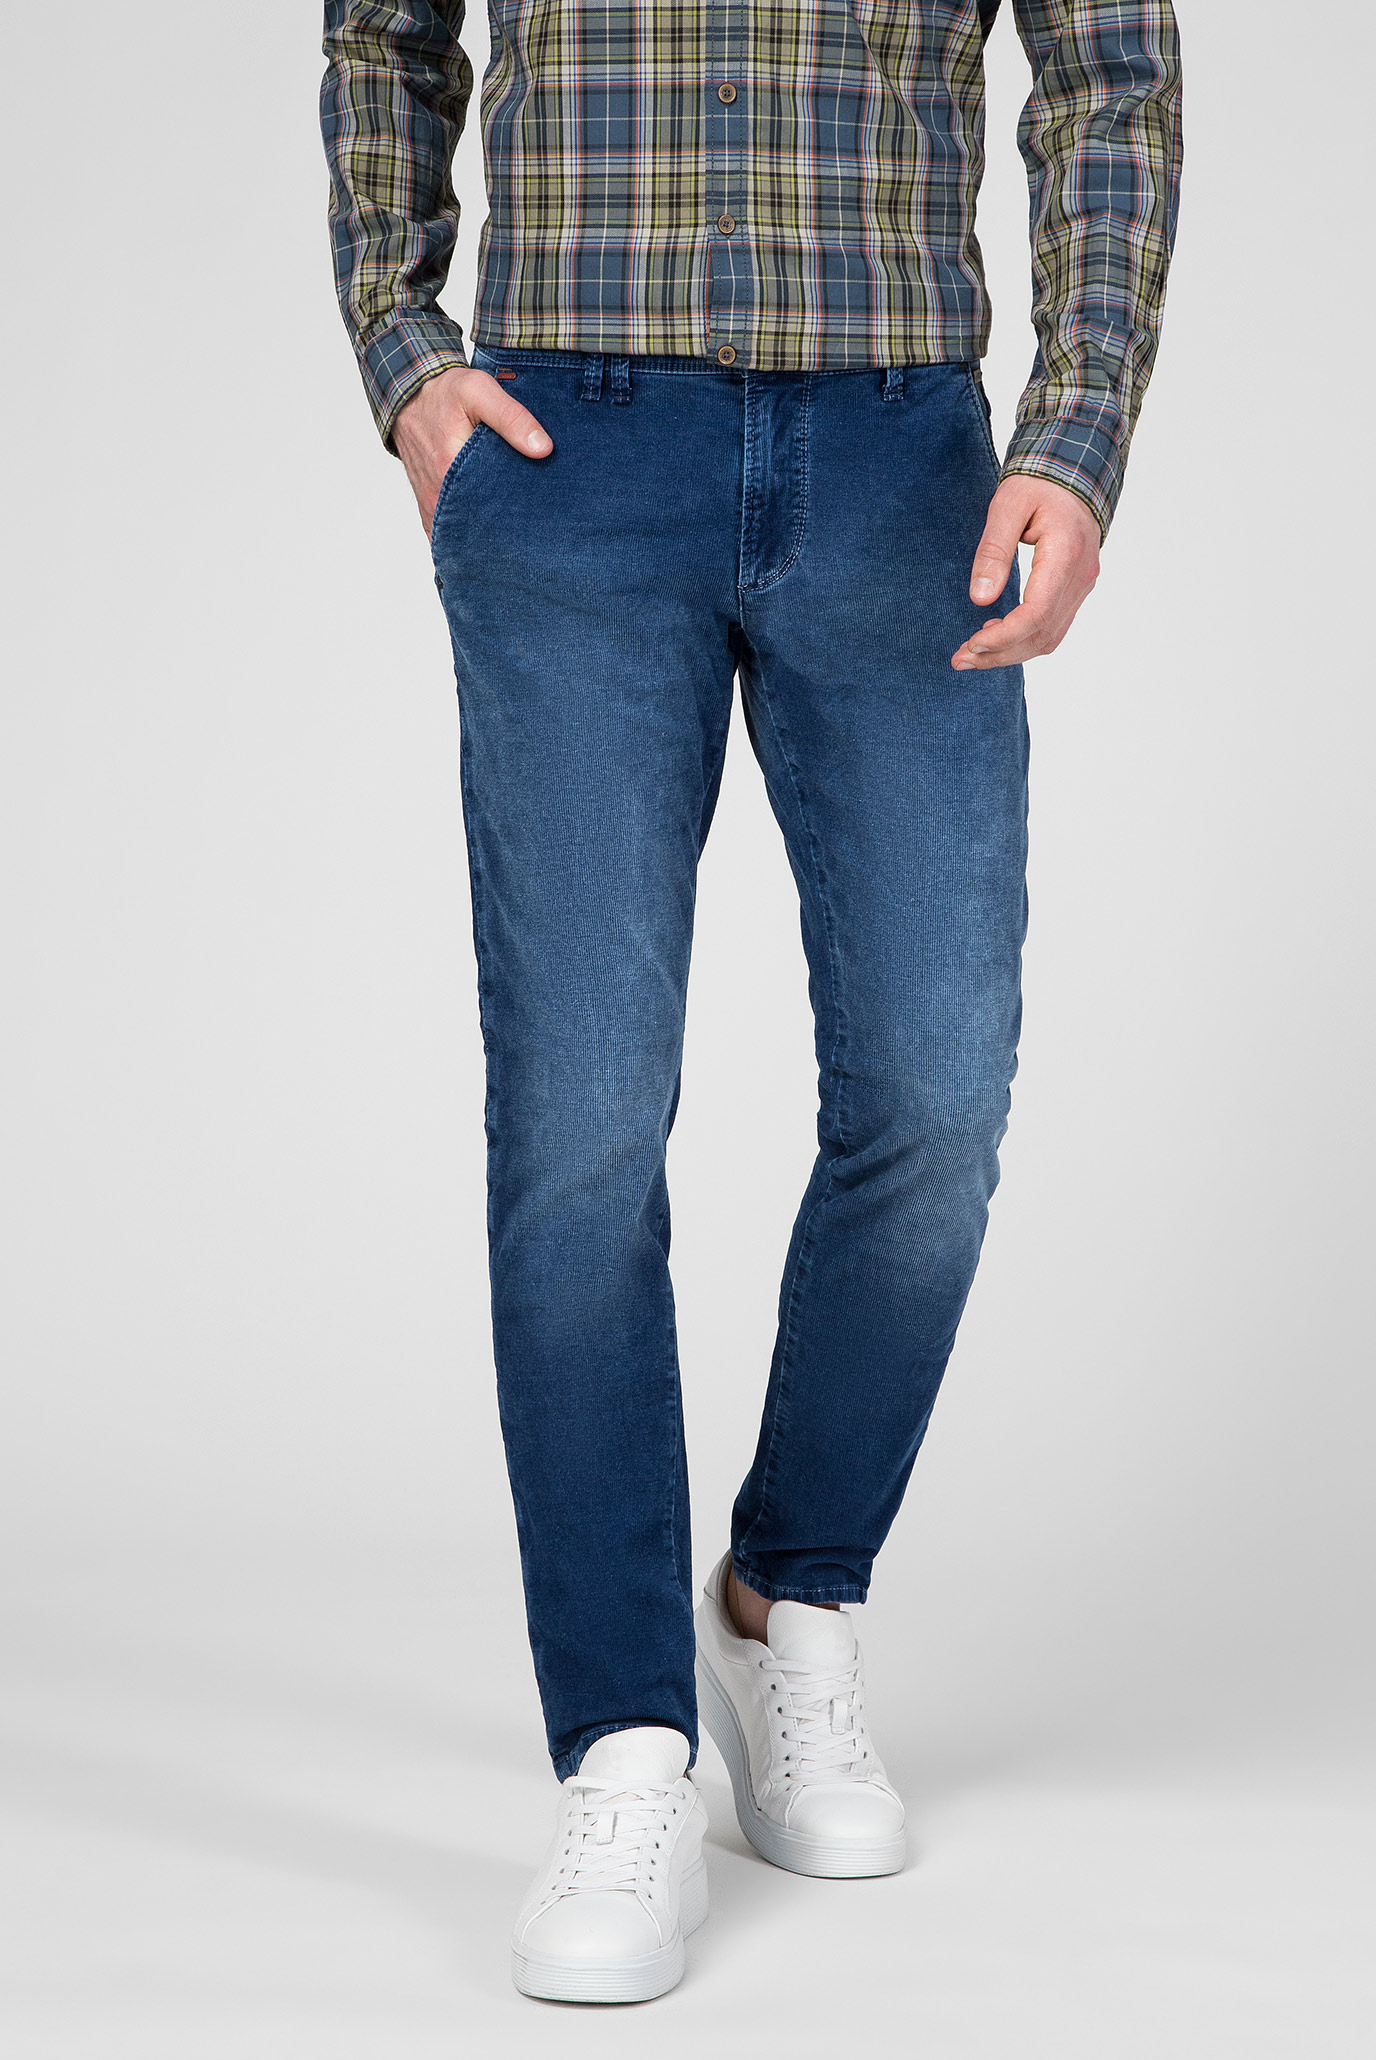 Мужские синие вельветовые брюки Toronto 1